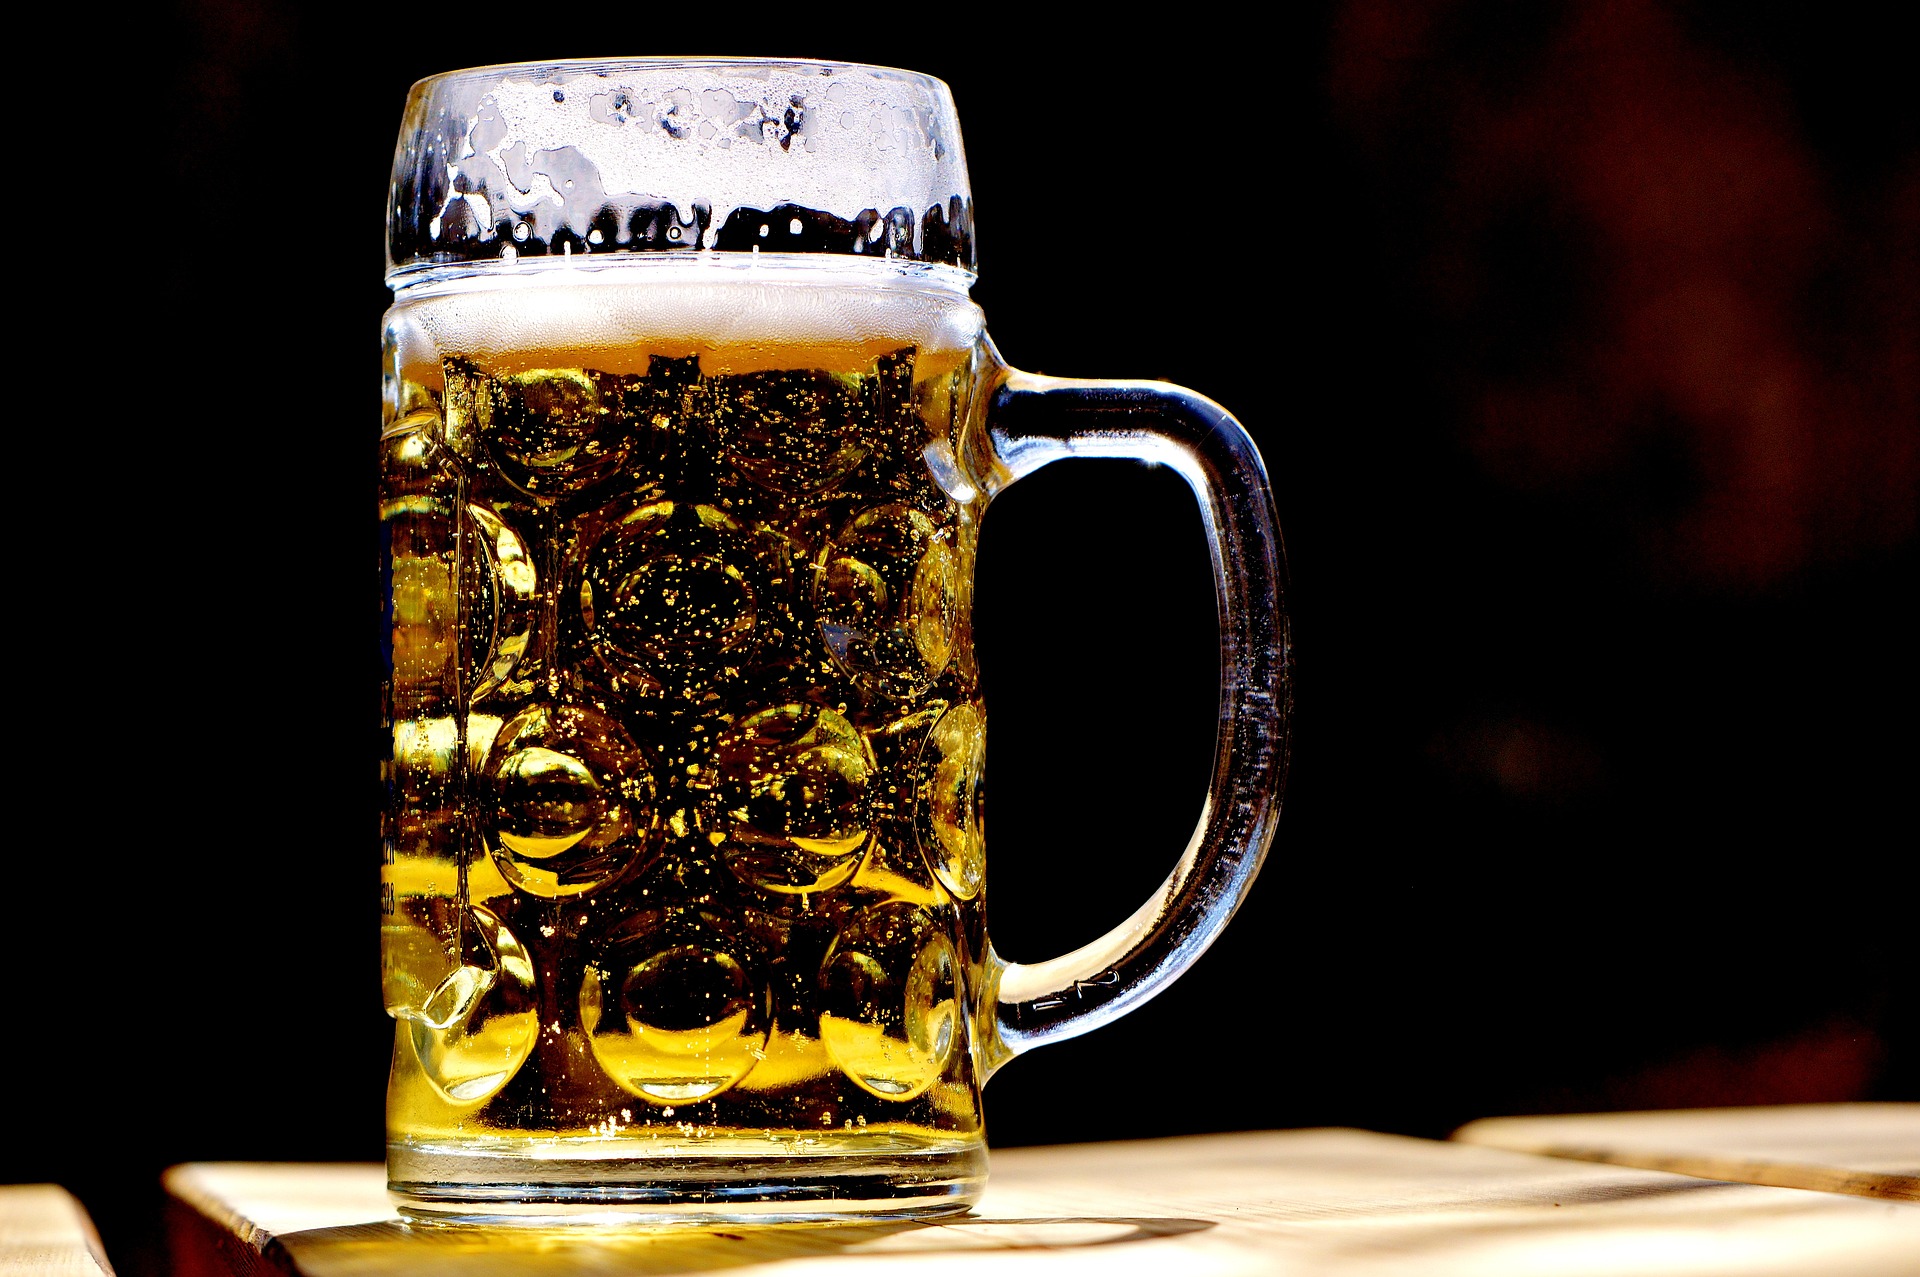 https://pixabay.com/photos/beer-mug-refreshment-beer-mug-2439237/